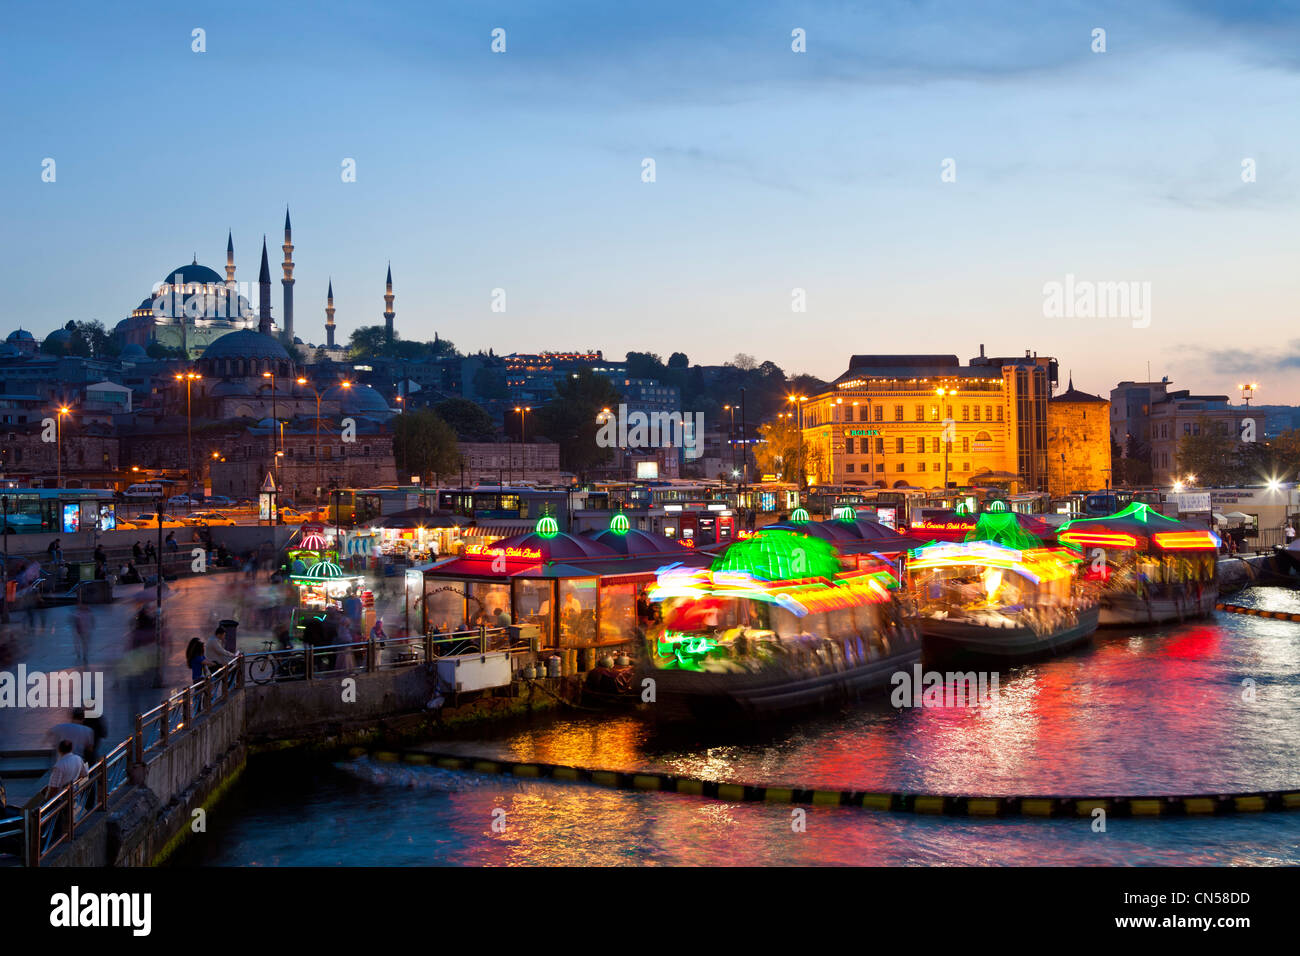 Turchia, Istanbul, centro storico elencati come patrimonio mondiale dall' UNESCO, Eminönü district, ristoranti di pesce su barche e il Foto Stock